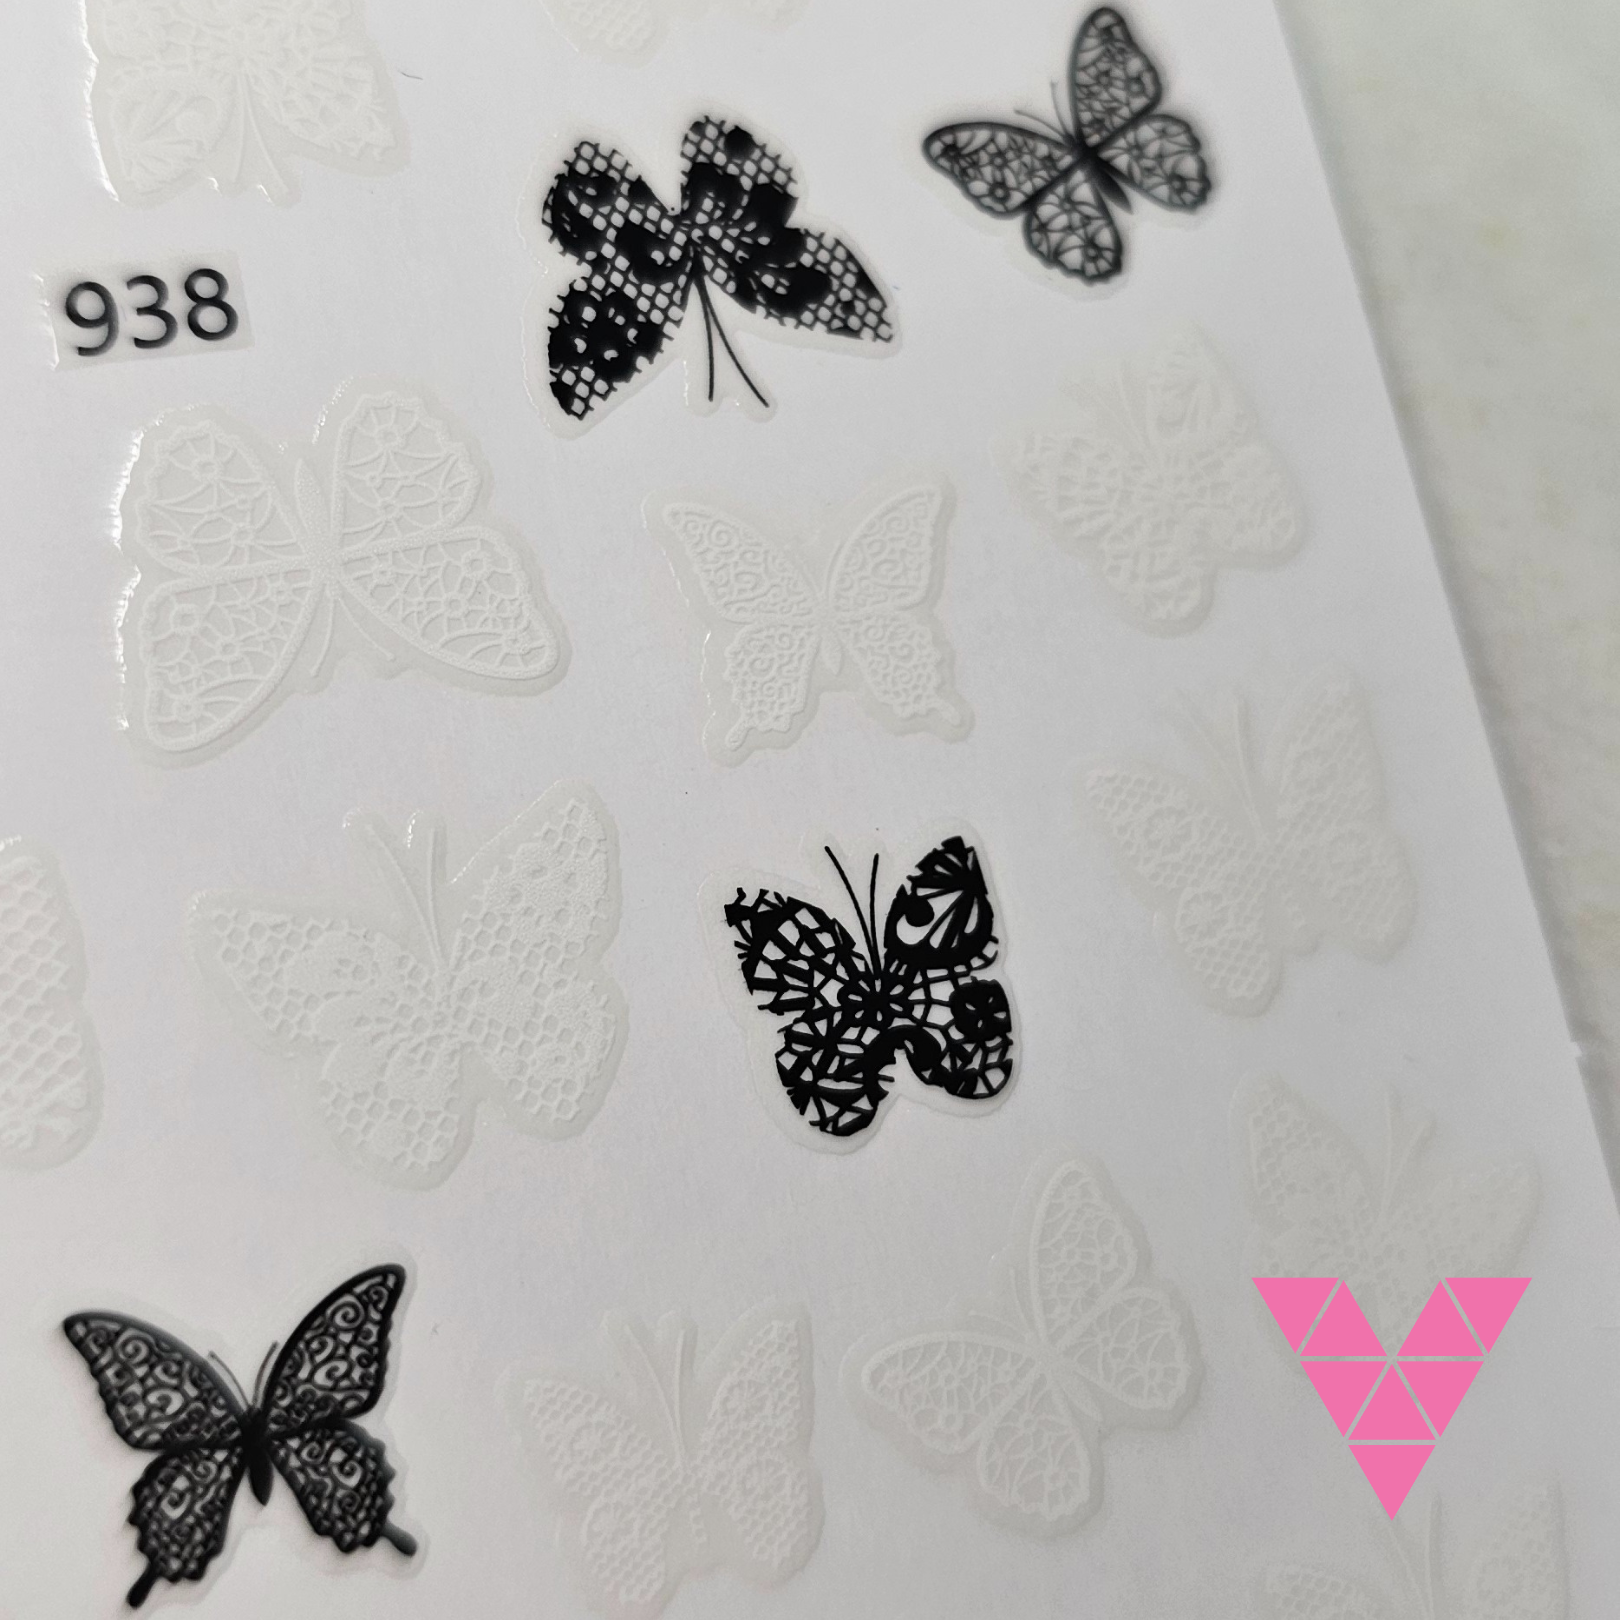 Butterfly 938 Sticker